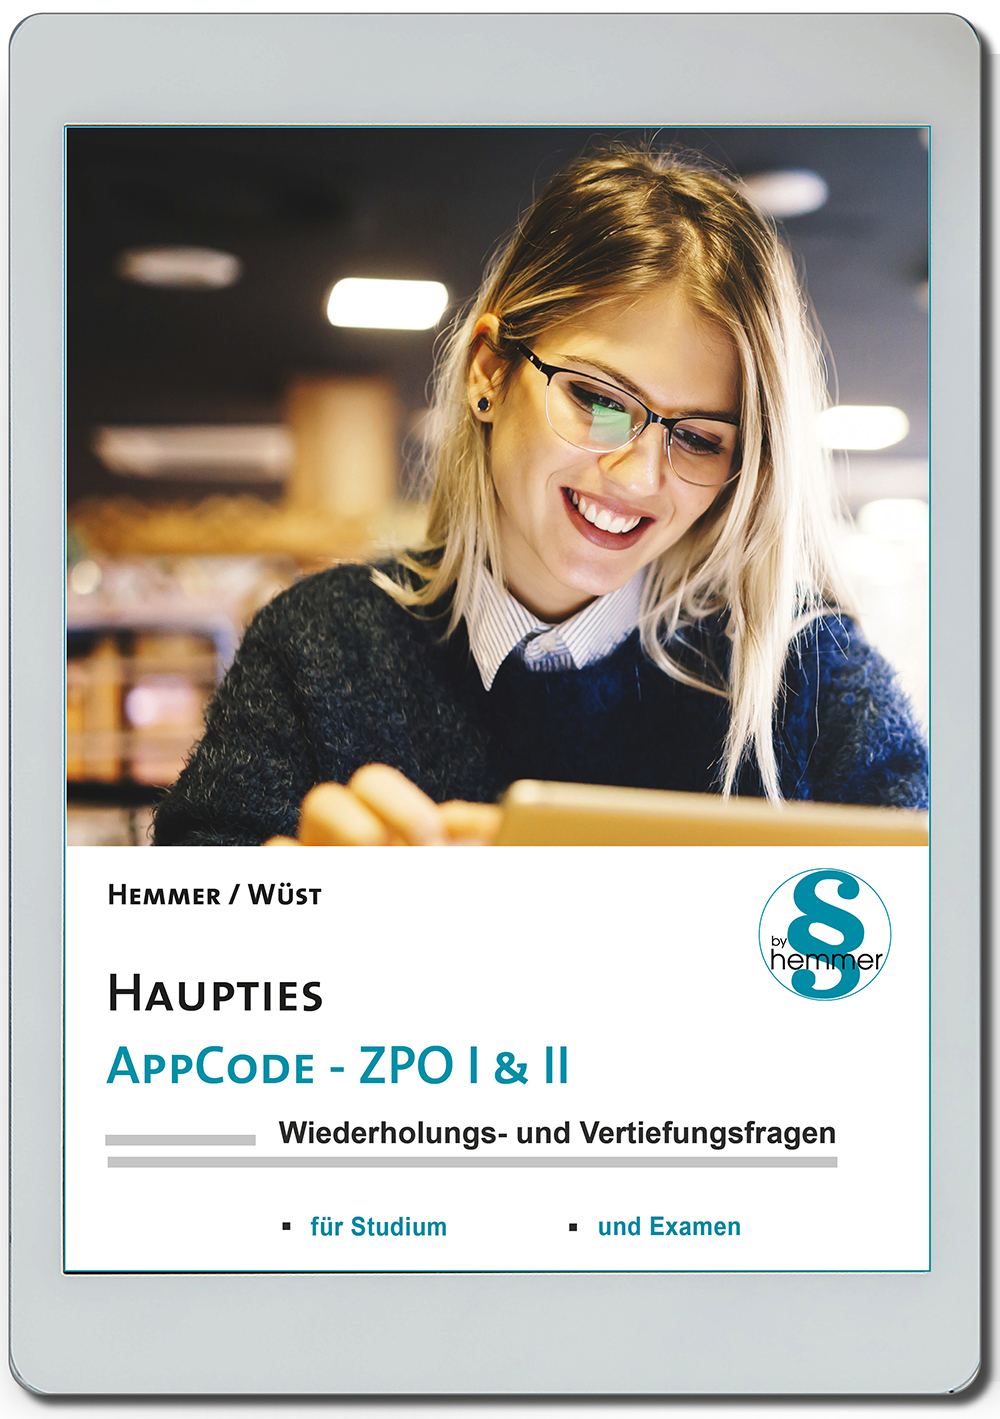 AppCode - haupties - Ziviprozessrecht I & II (ZPO)